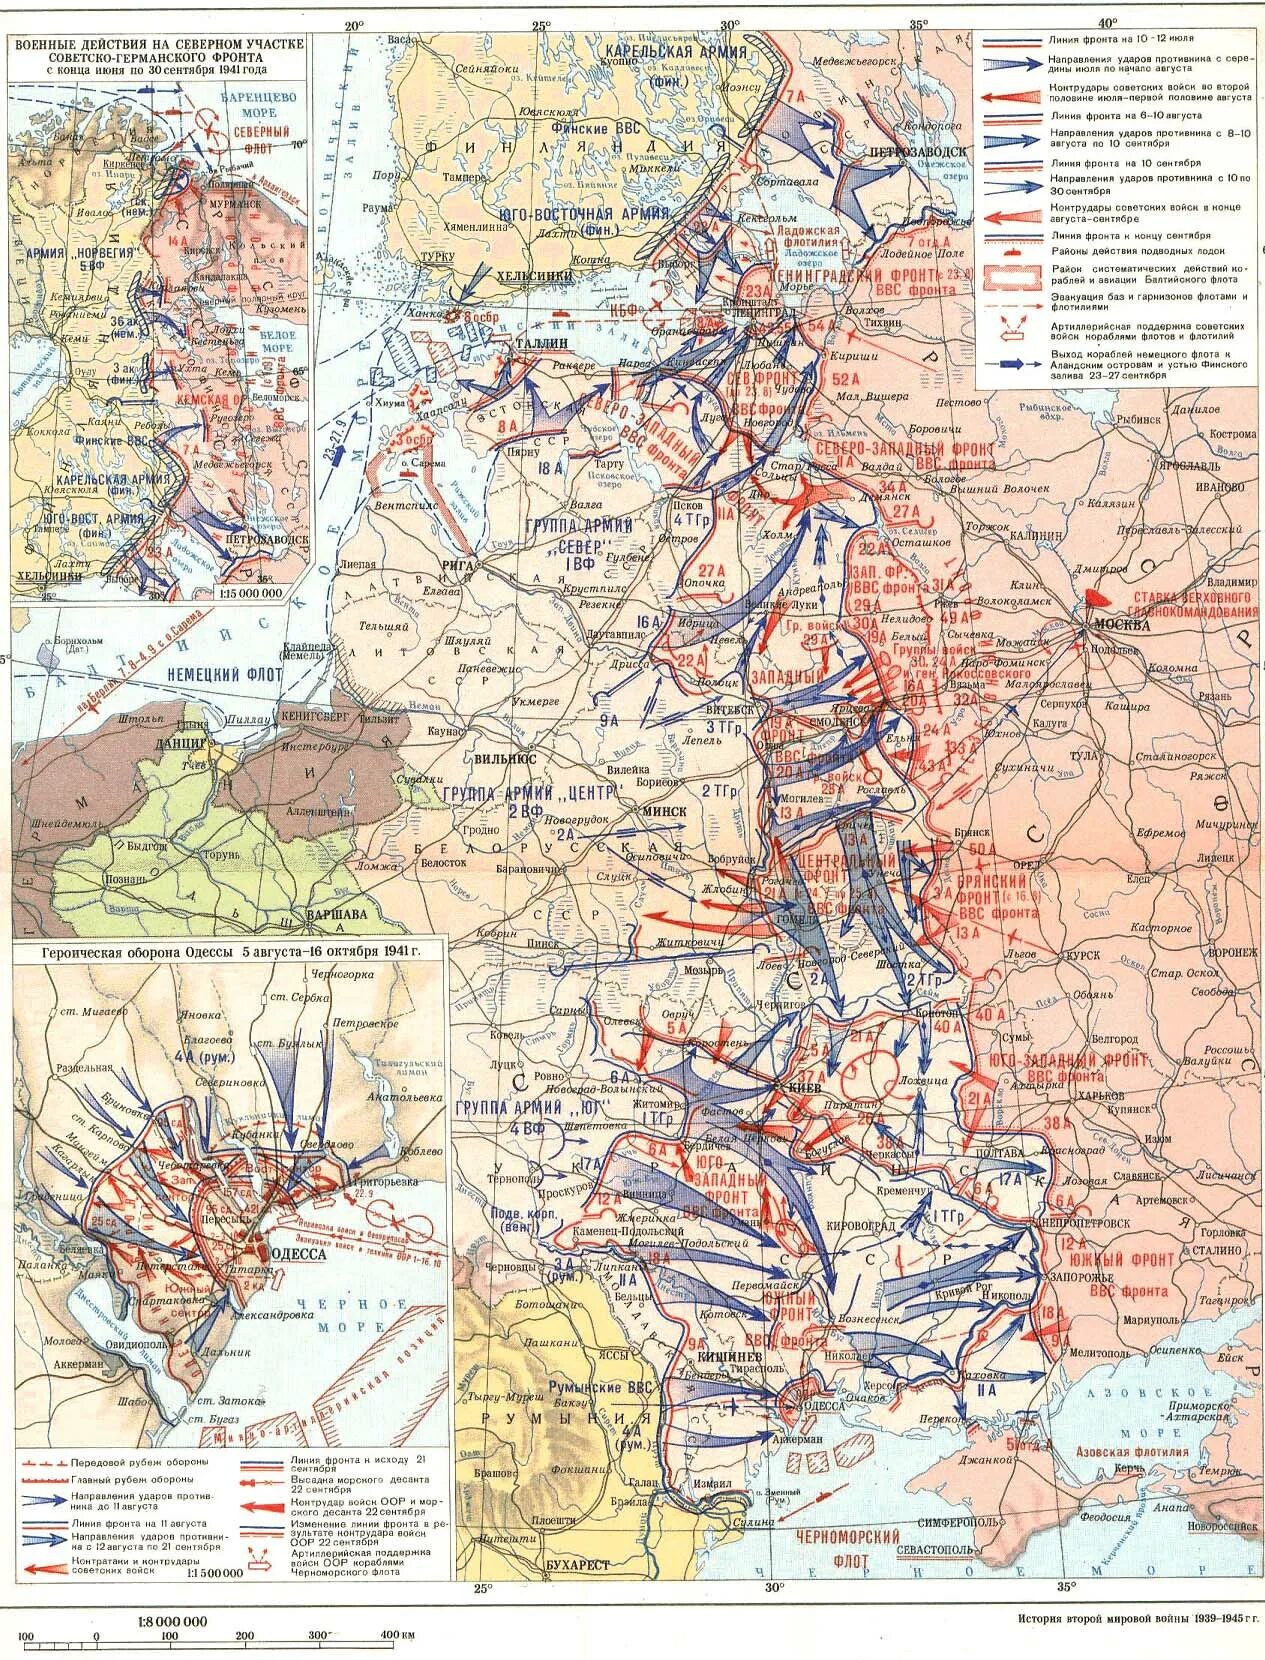 1 июля фронт. Линия фронта в 1941 году. Карта ВОВ сентябрь 1941. Карта военных действий в ВОВ В 1941 году. Линия фронта на июль 1941 года.